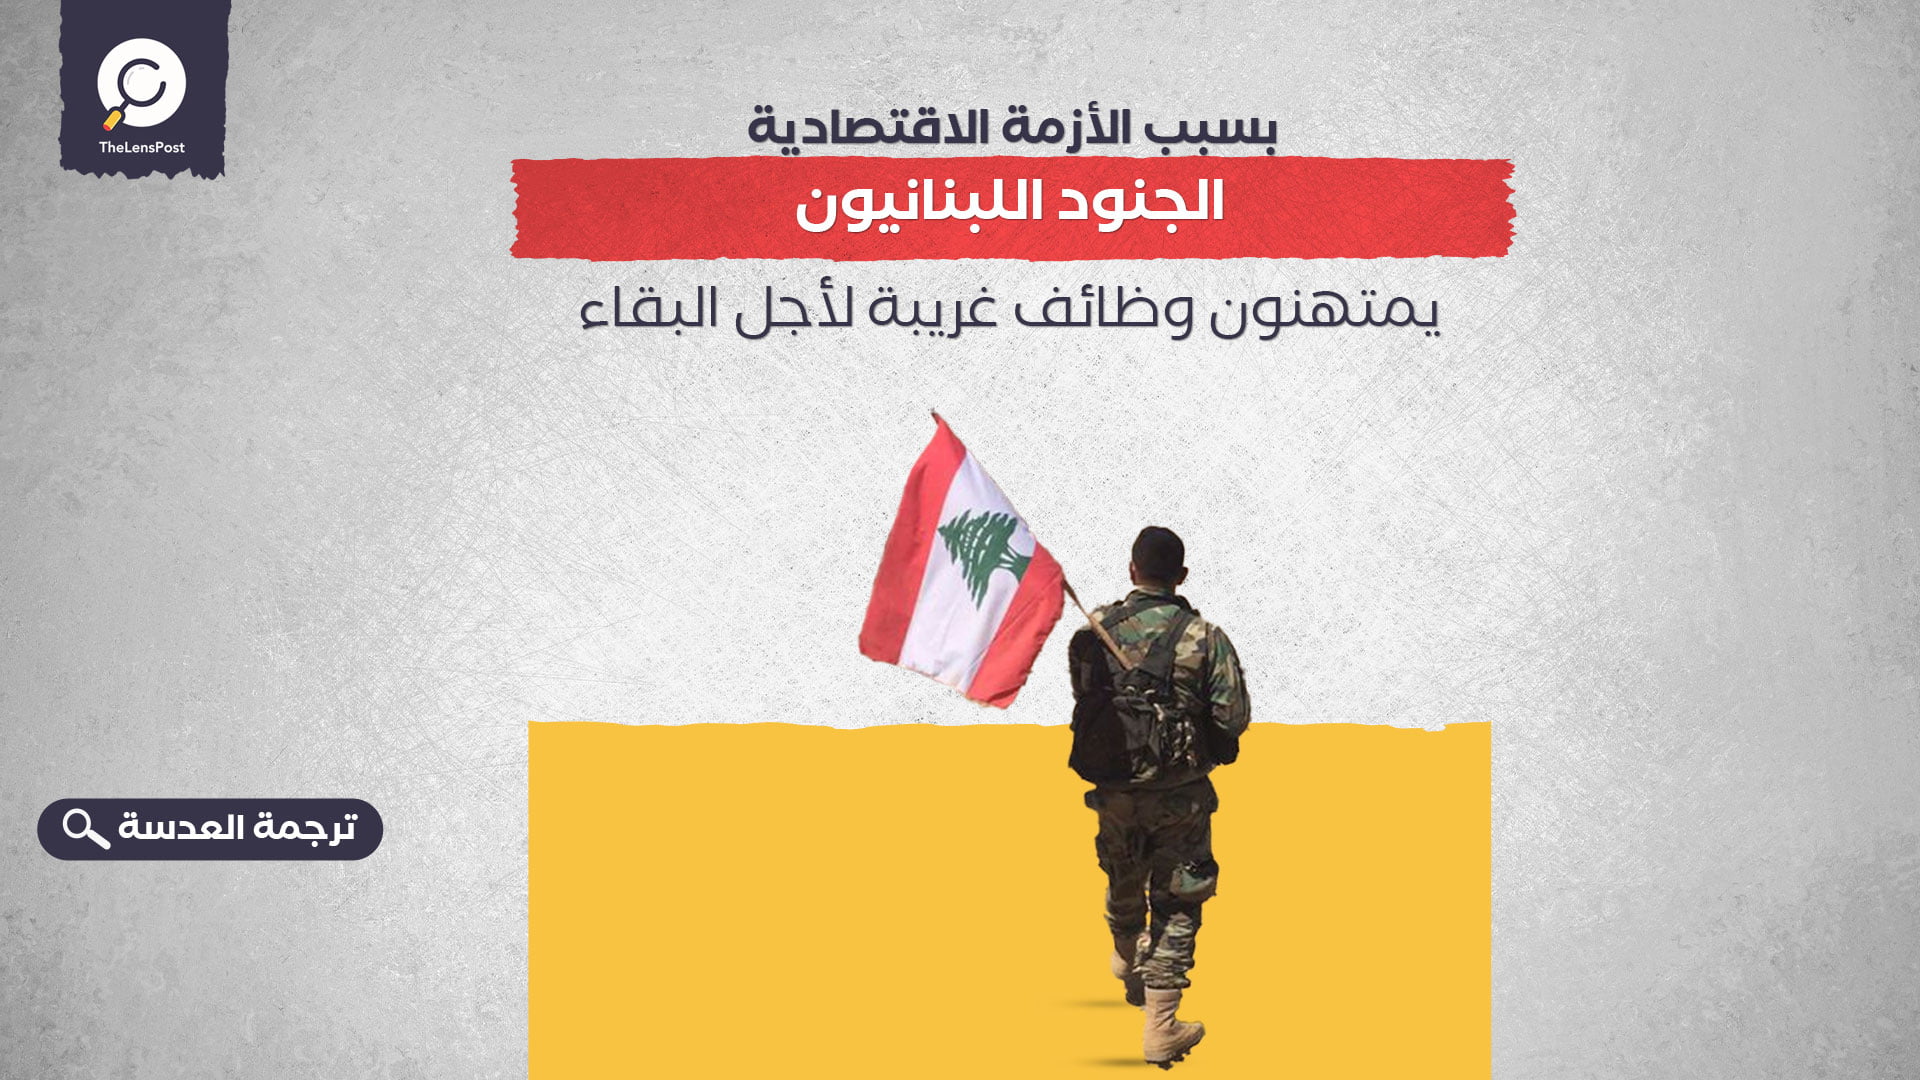 بسبب الأزمة الاقتصادية.. الجنود اللبنانيون يمتهنون وظائف غريبة لأجل البقاء